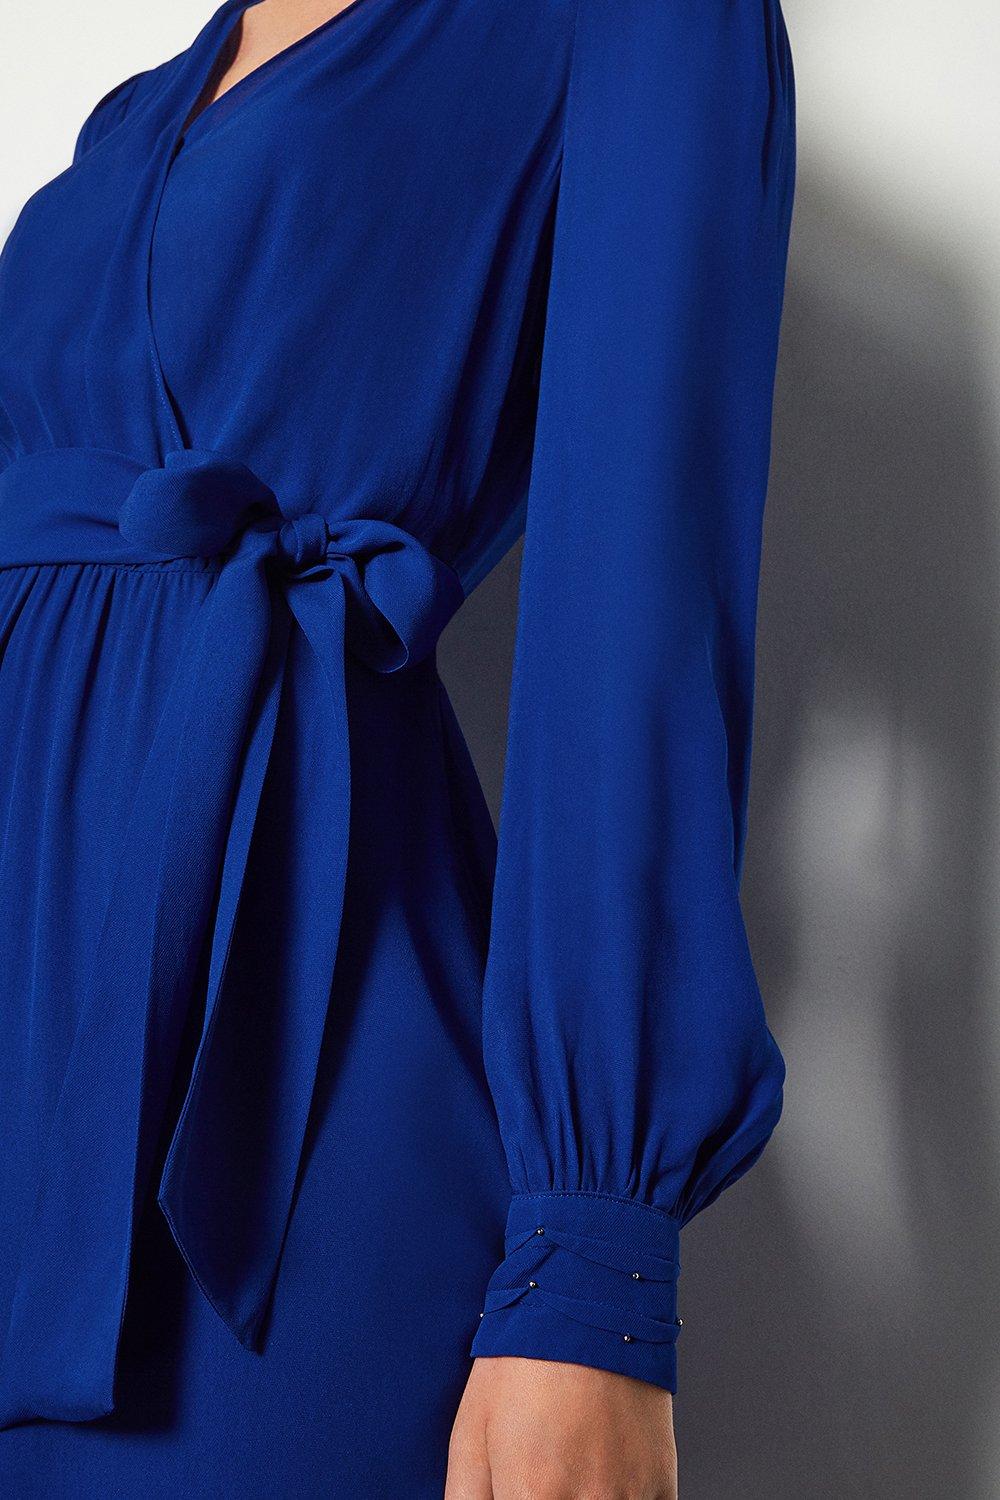 Long Sleeve Short Wrap Dress | Karen Millen